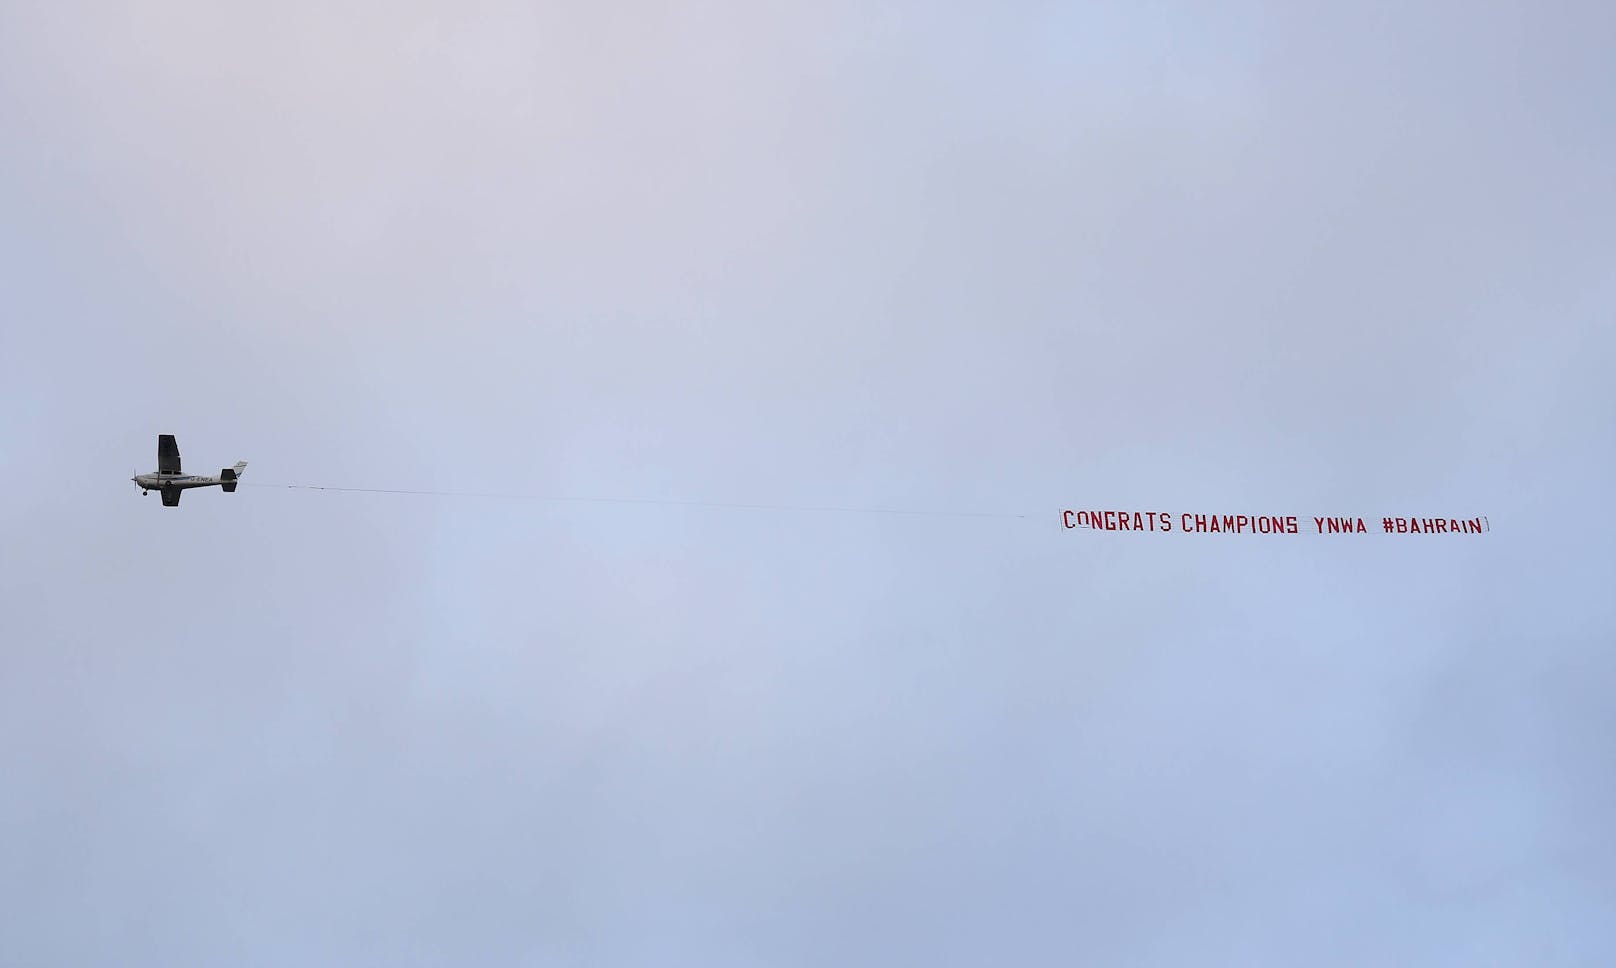 Schon wieder ist ein Flugzeug samt Banner über ein Premier-League-Stadion geflogen. 